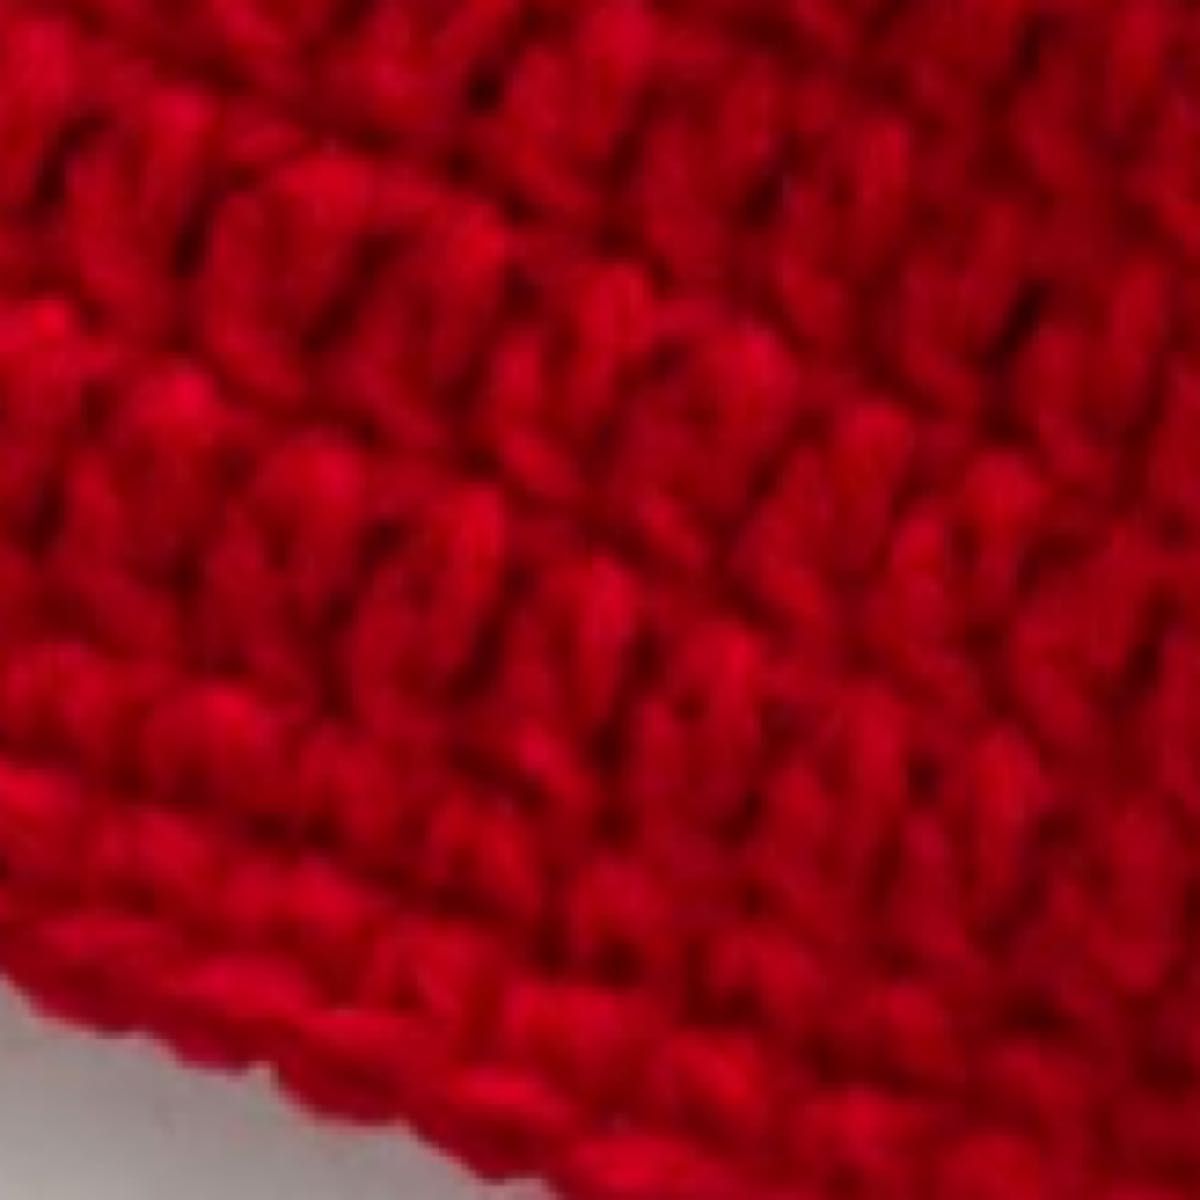 ハンドメイドメイド　手編み　りんご帽子　ふんわり暖かなアクリル00%